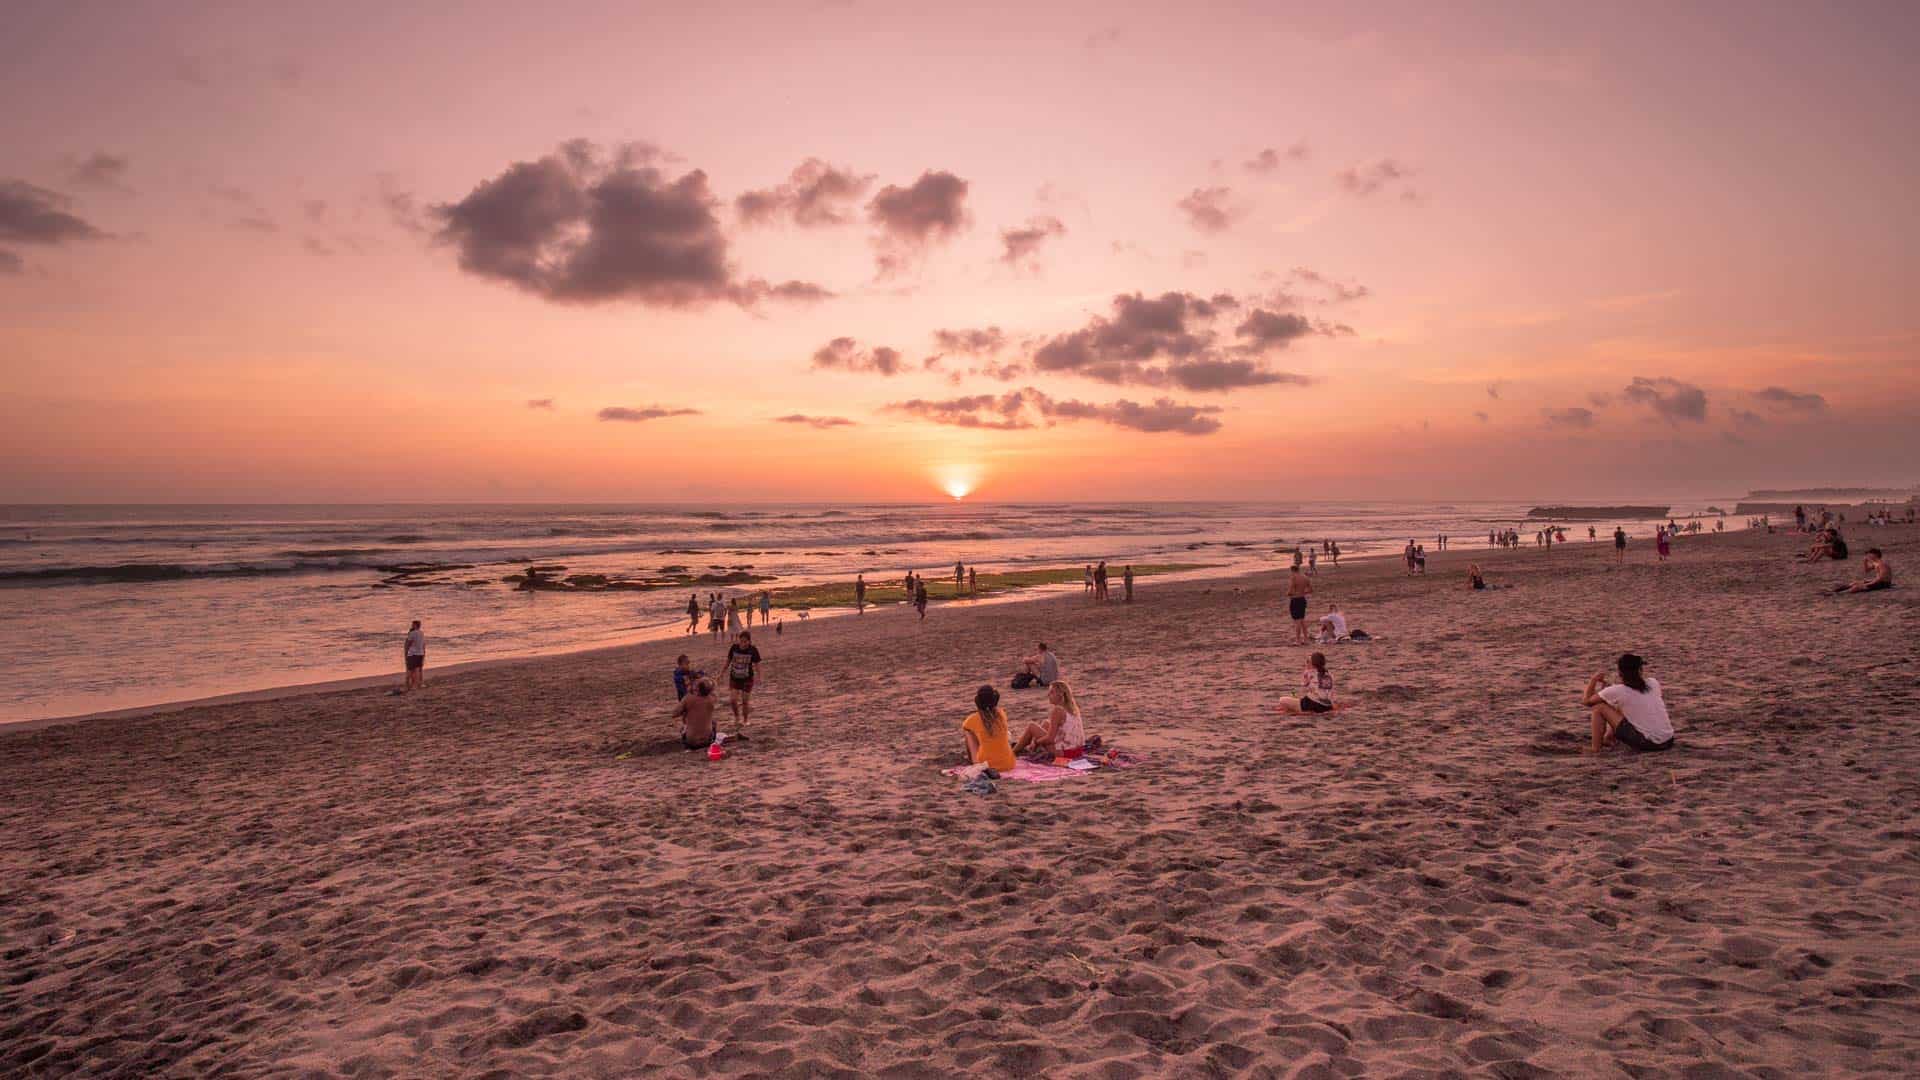 batu-bolong-beach-sunset-watching